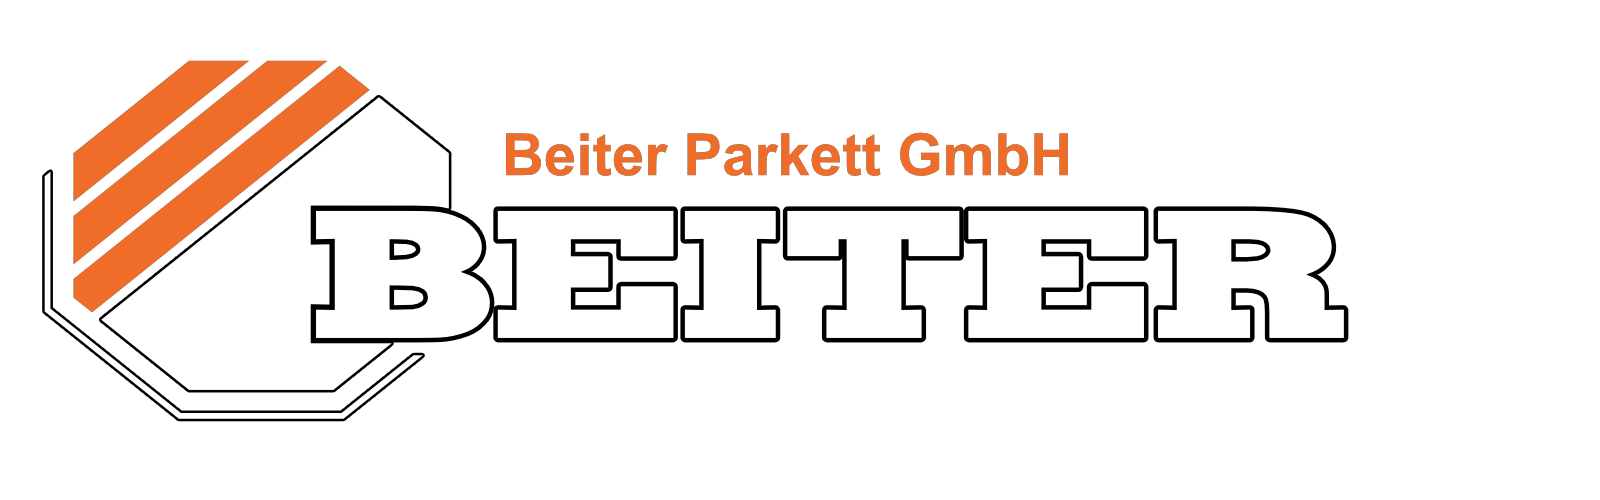 Beiter Parkett GmbH